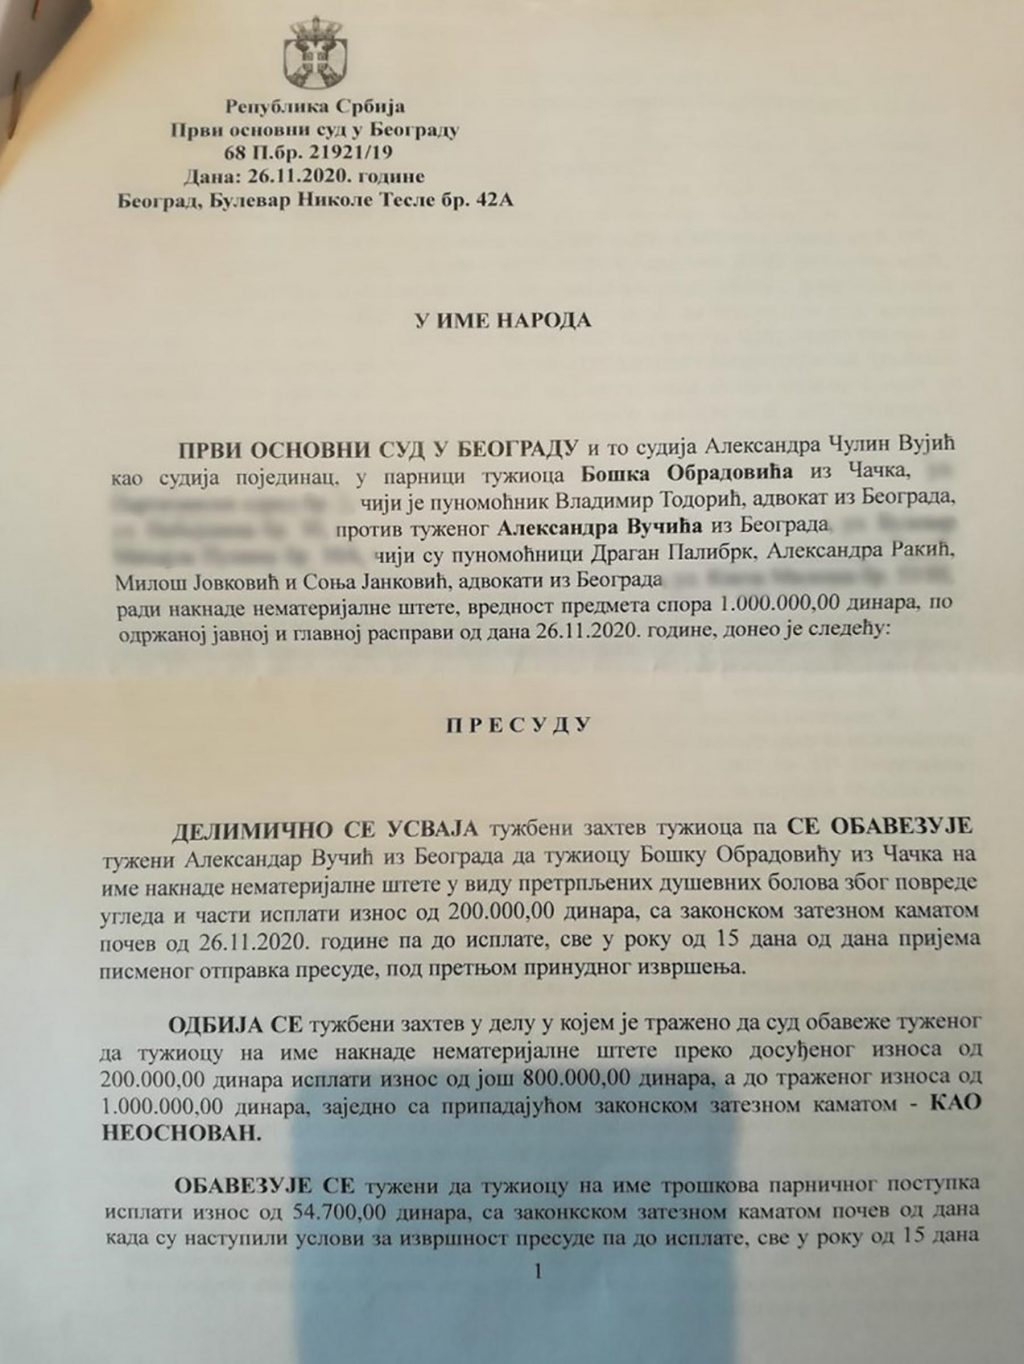 Суд наложио Александру Вучићу да исплати одштету јер је Бошка Обрадовића називао лоповом и фашистом